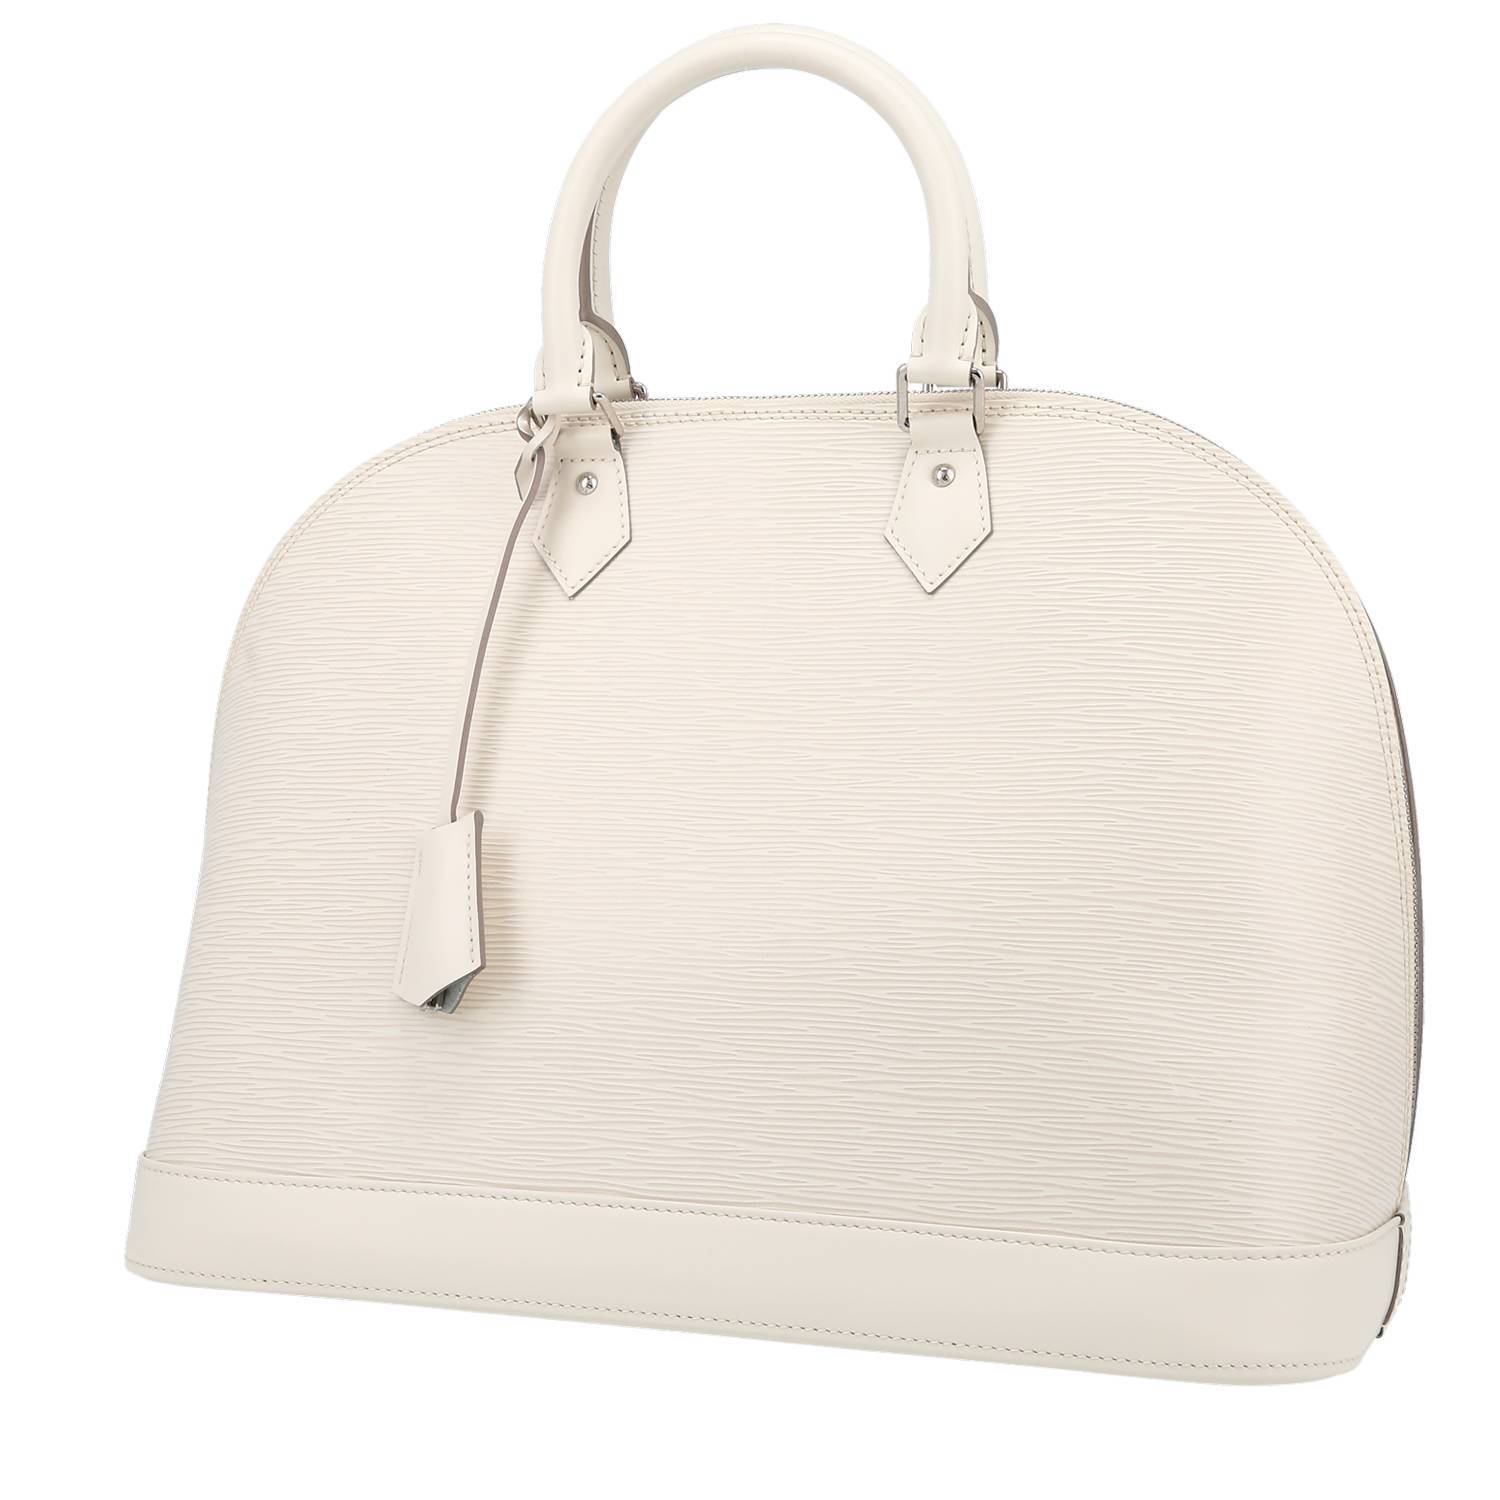 Louis Vuitton Alma Handbag 401641